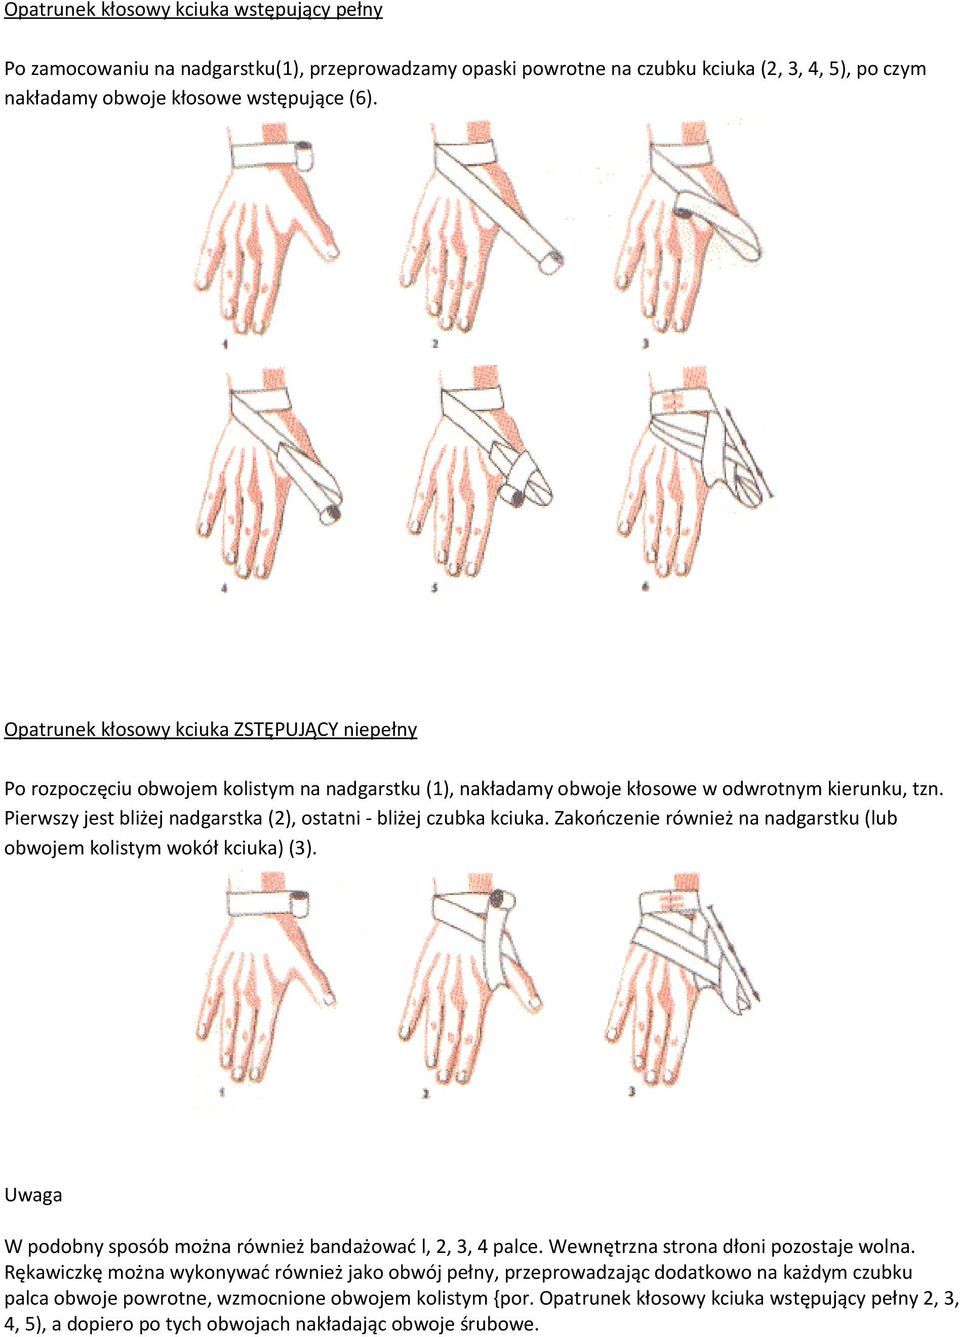 Pierwszy jest bliżej nadgarstka (2), ostatni - bliżej czubka kciuka. Zakończenie również na nadgarstku (lub obwojem kolistym wokół kciuka) (3).